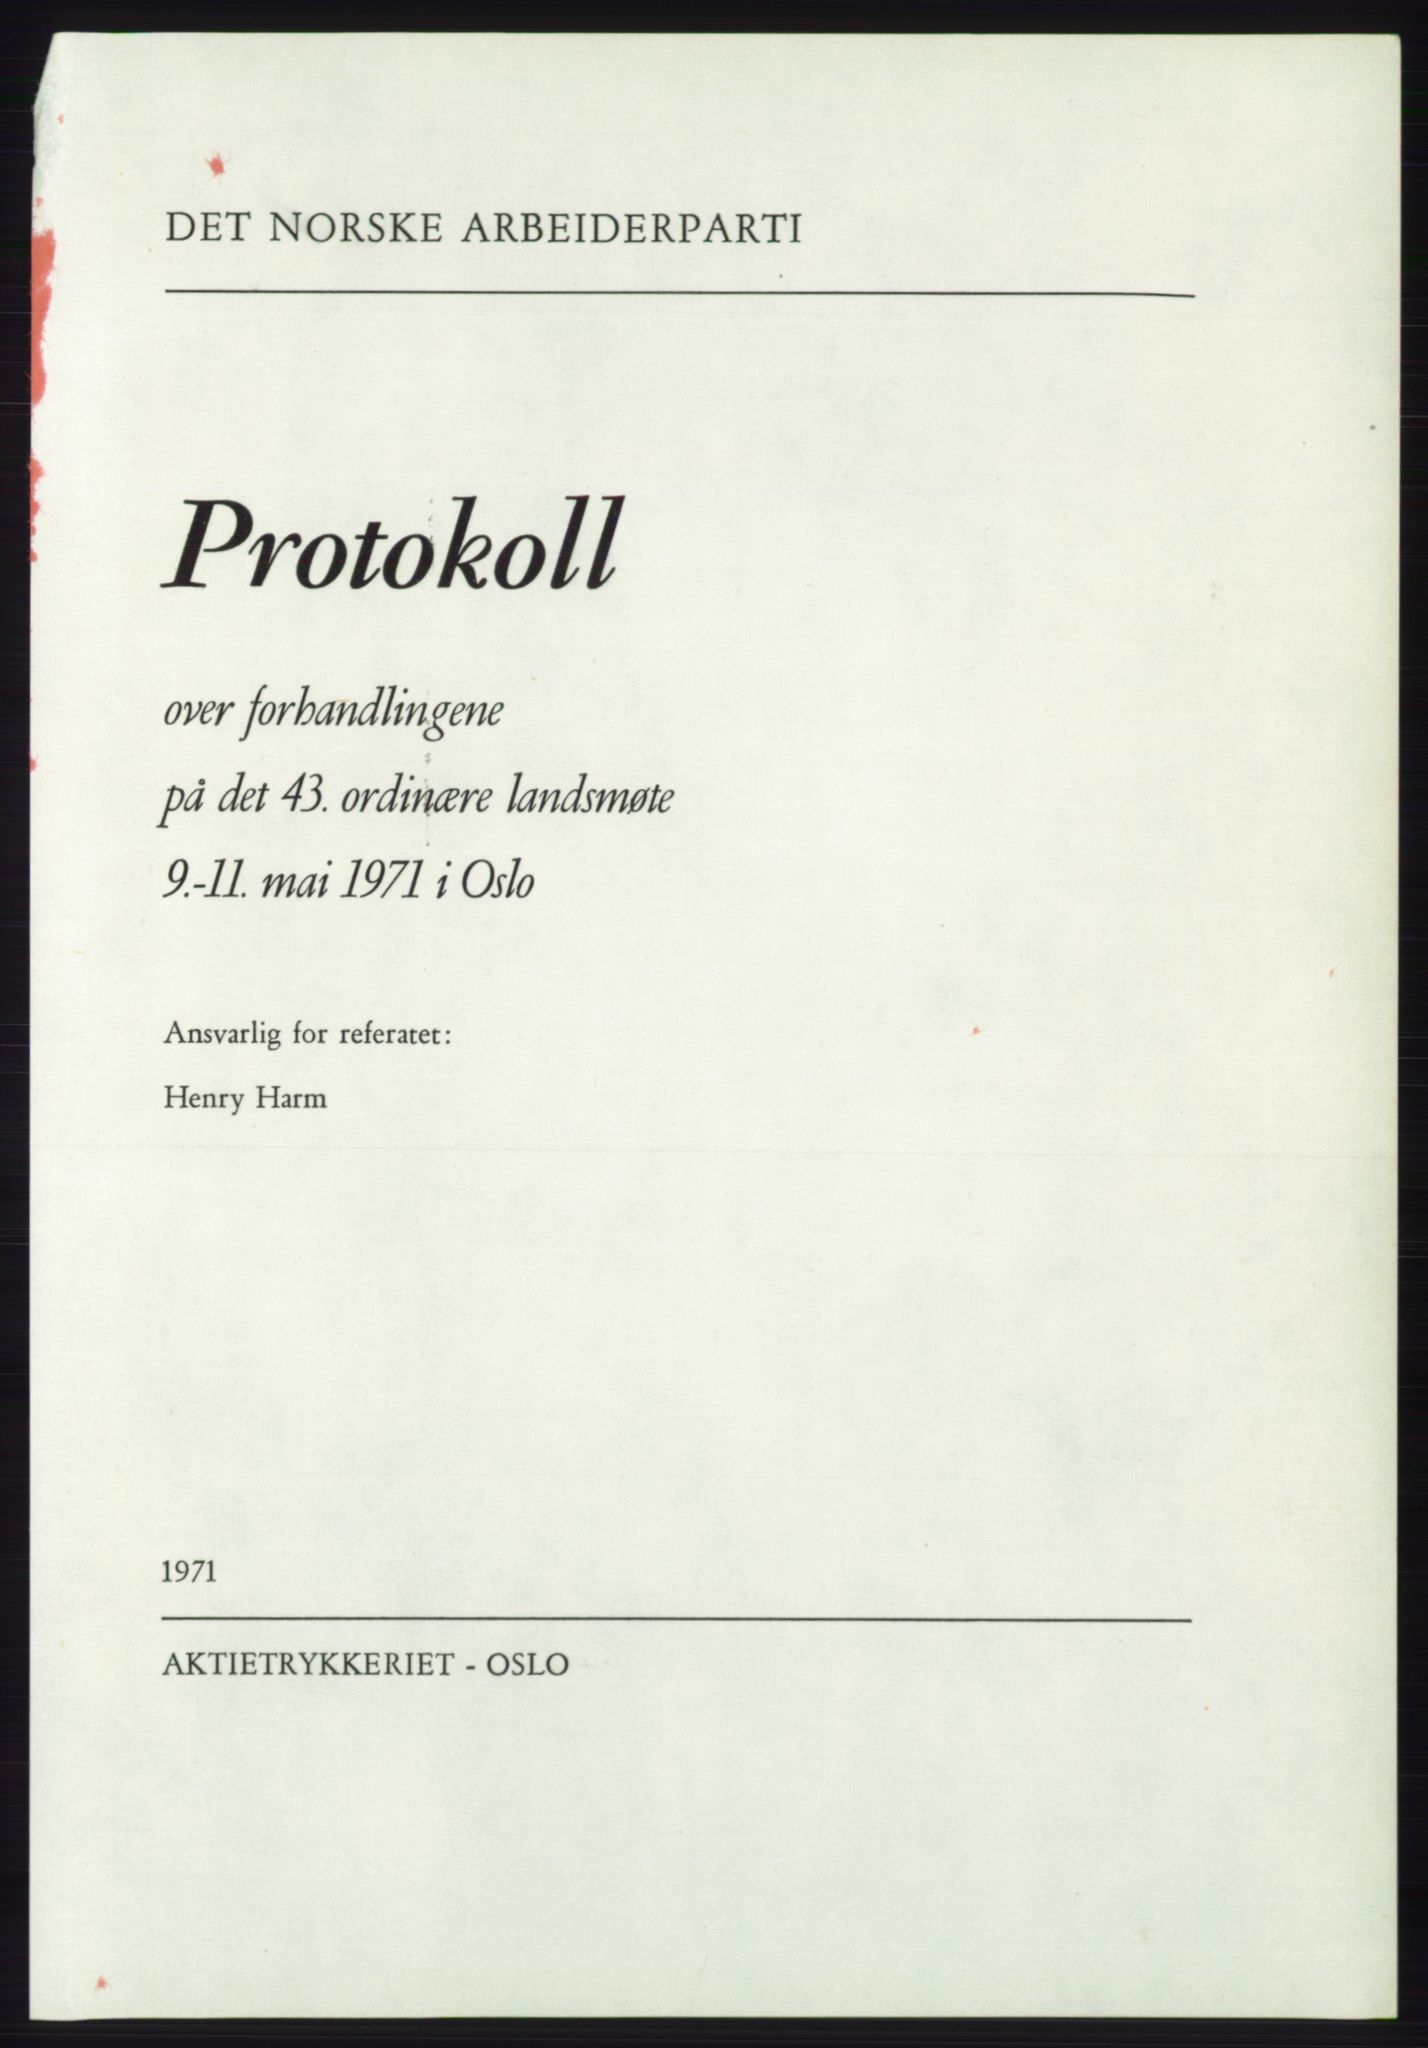 Det norske Arbeiderparti - publikasjoner, AAB/-/-/-: Protokoll over forhandlingene på det 43. ordinære landsmøte 9.-11. mai 1971 i Oslo, 1971